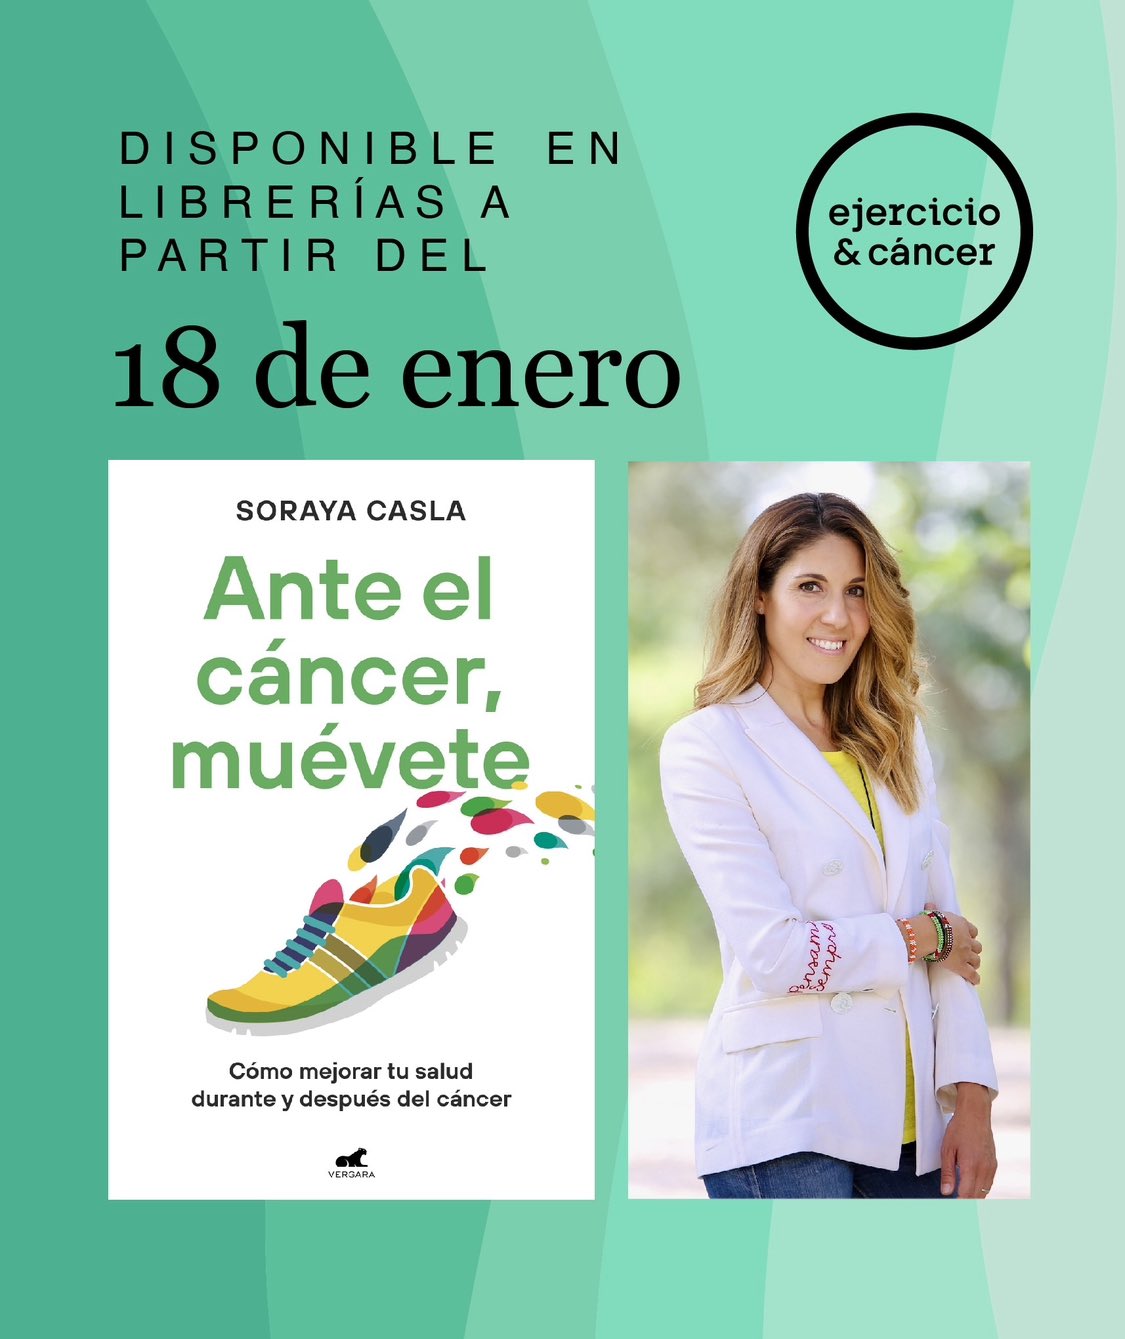 Soraya Casla on X: Hoy con mucha alegría os puedo contar que el día 18 de  enero mi libro “Ante el cáncer, muévete” verá la luz y estará disponible en  librerías. #anteelcancermuévete